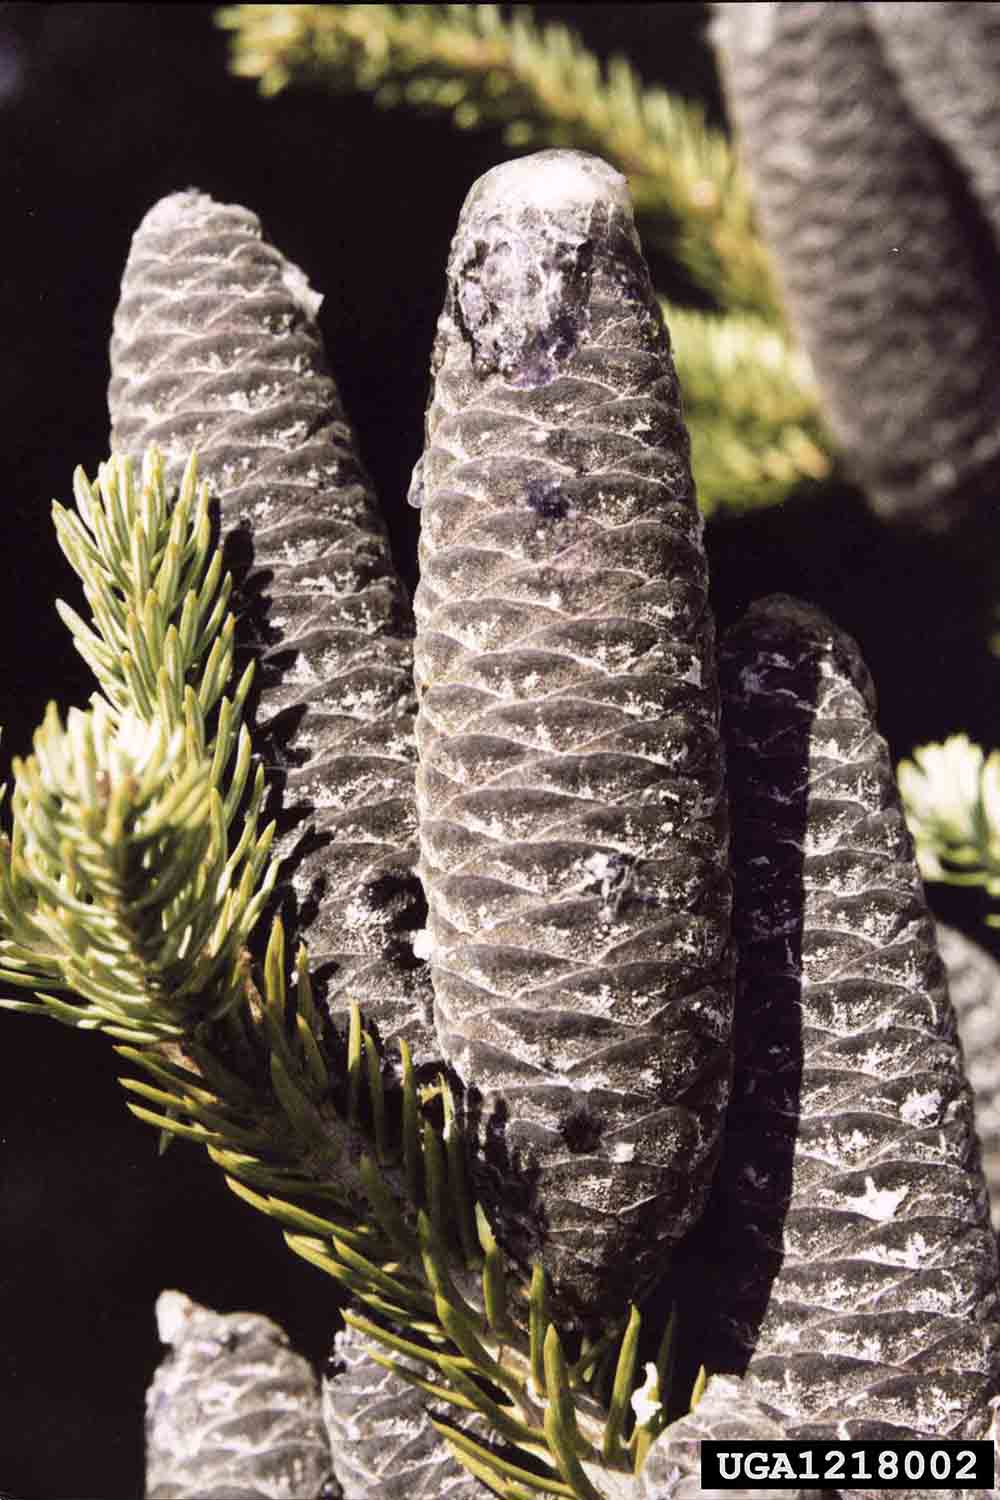 Balsam fir cones, 2"-4" long